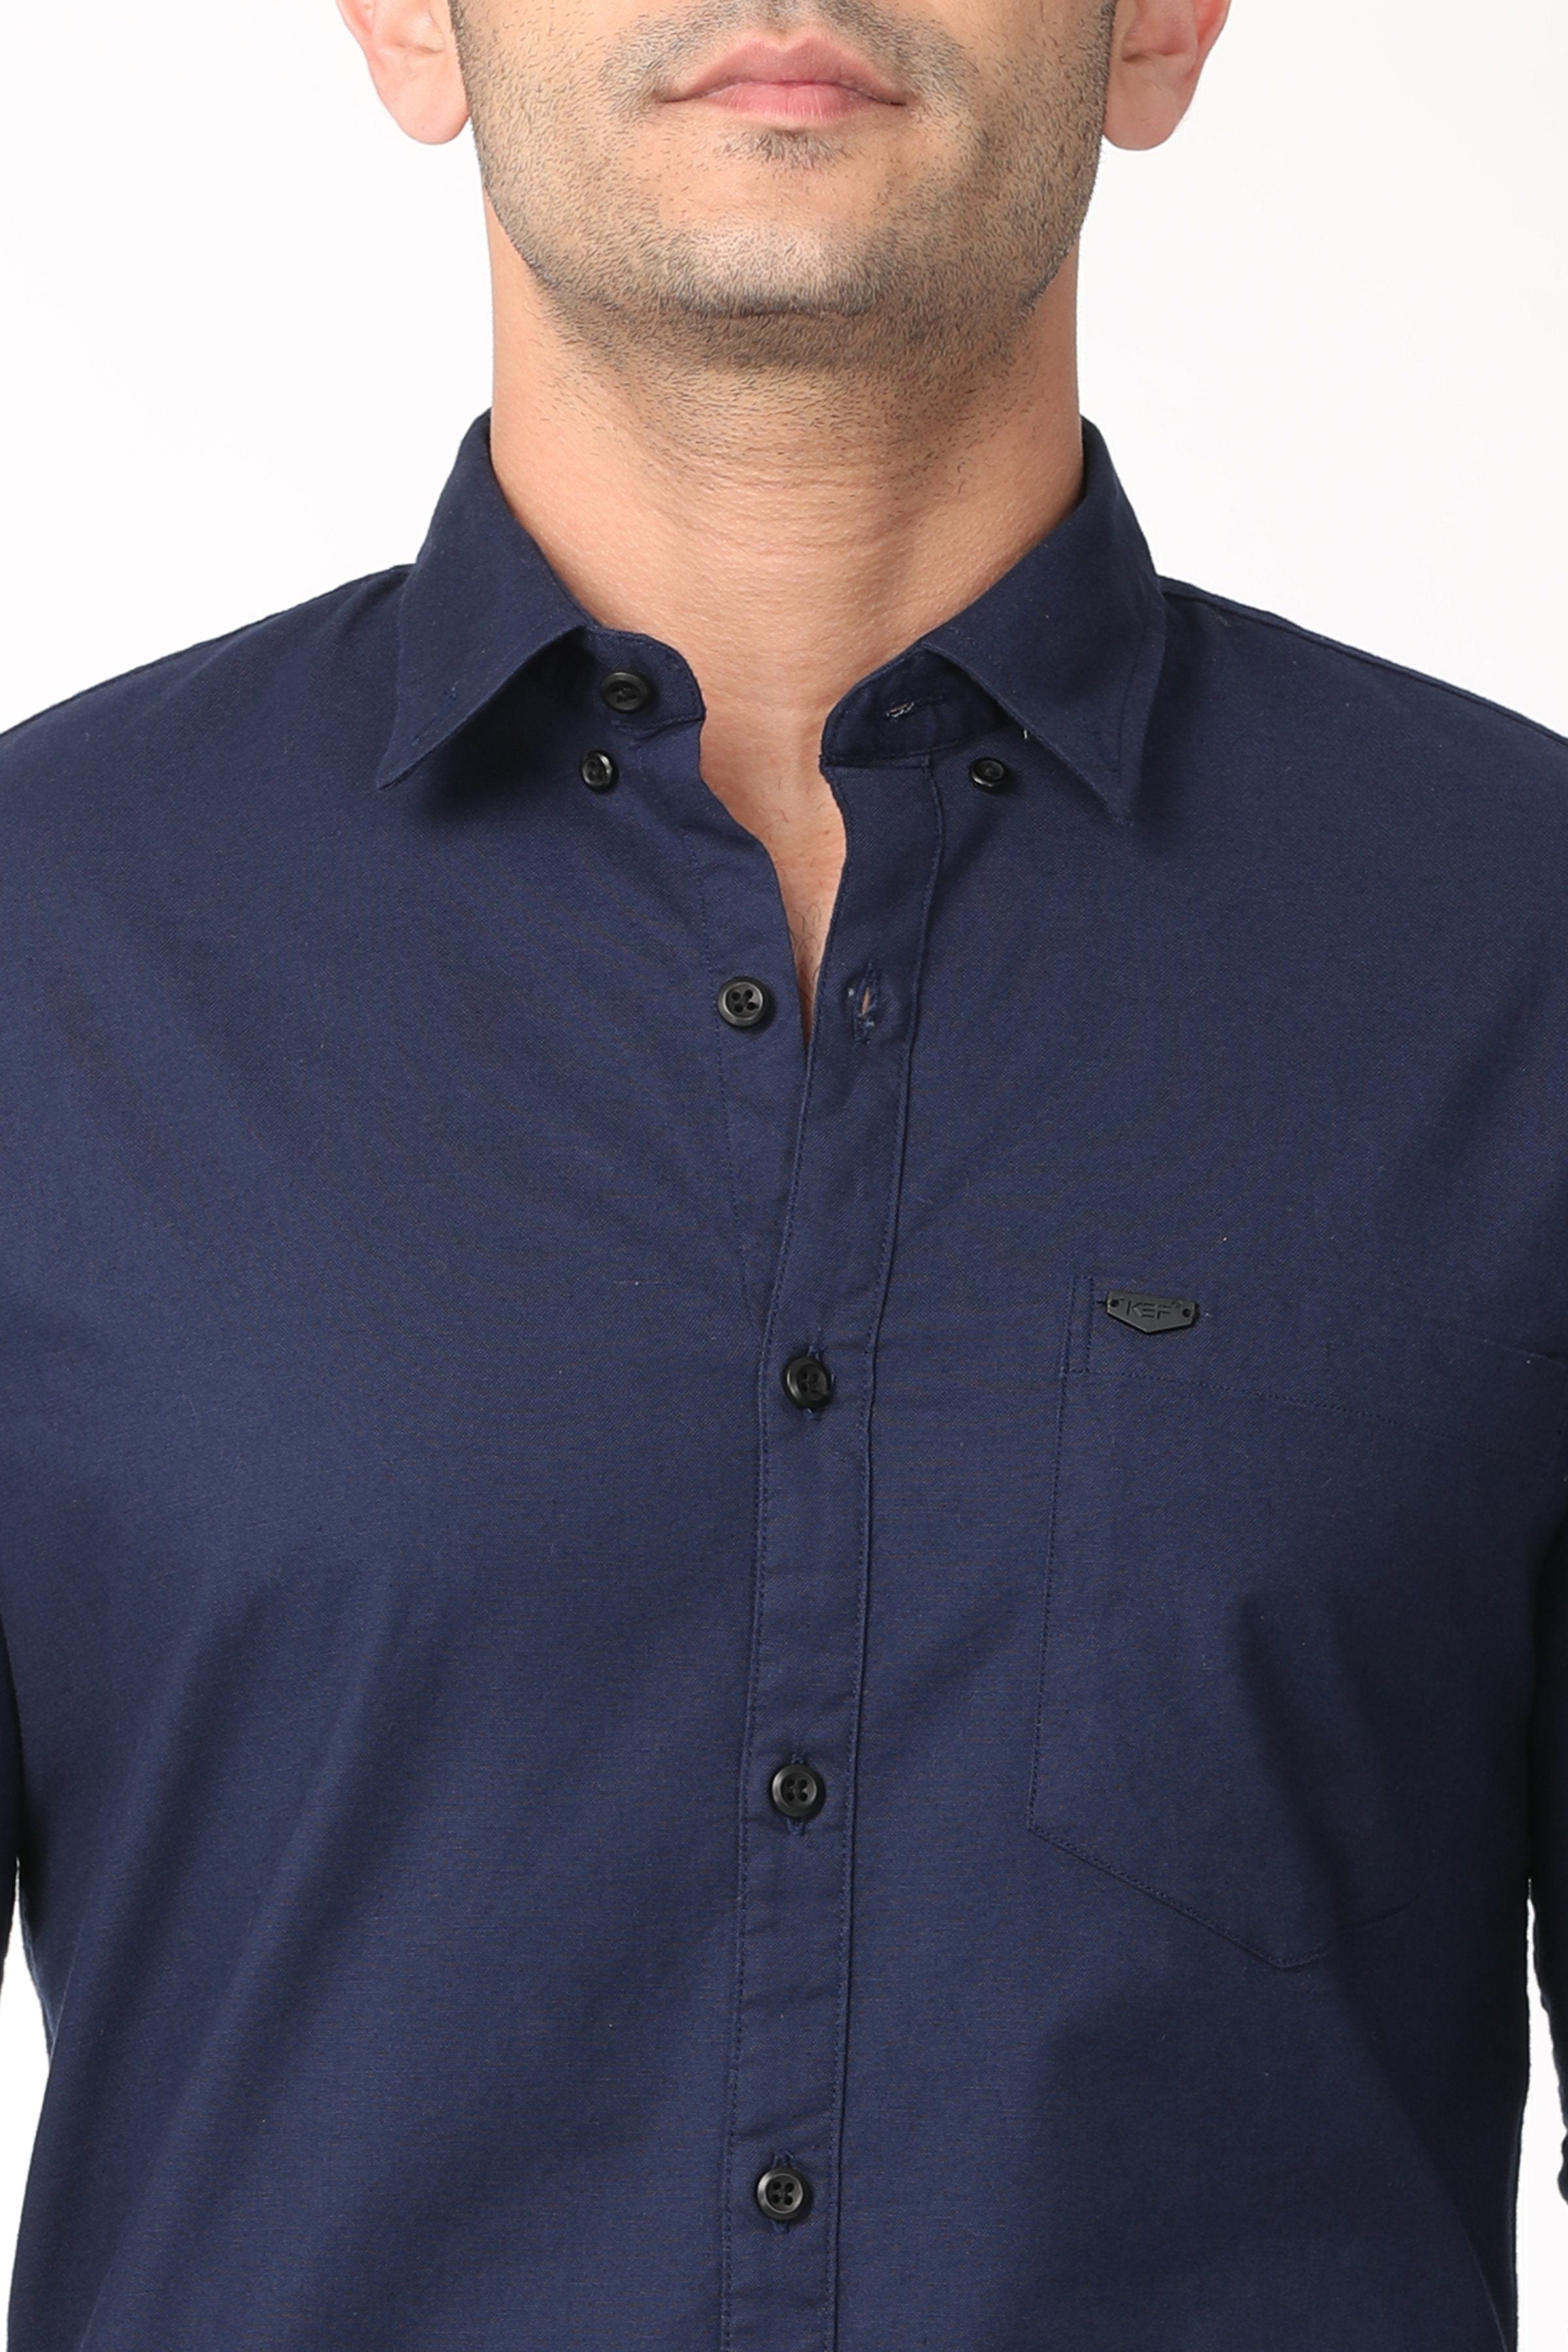 Elegant Dark Blue Full Sleeve Shirt Shirts KEF 